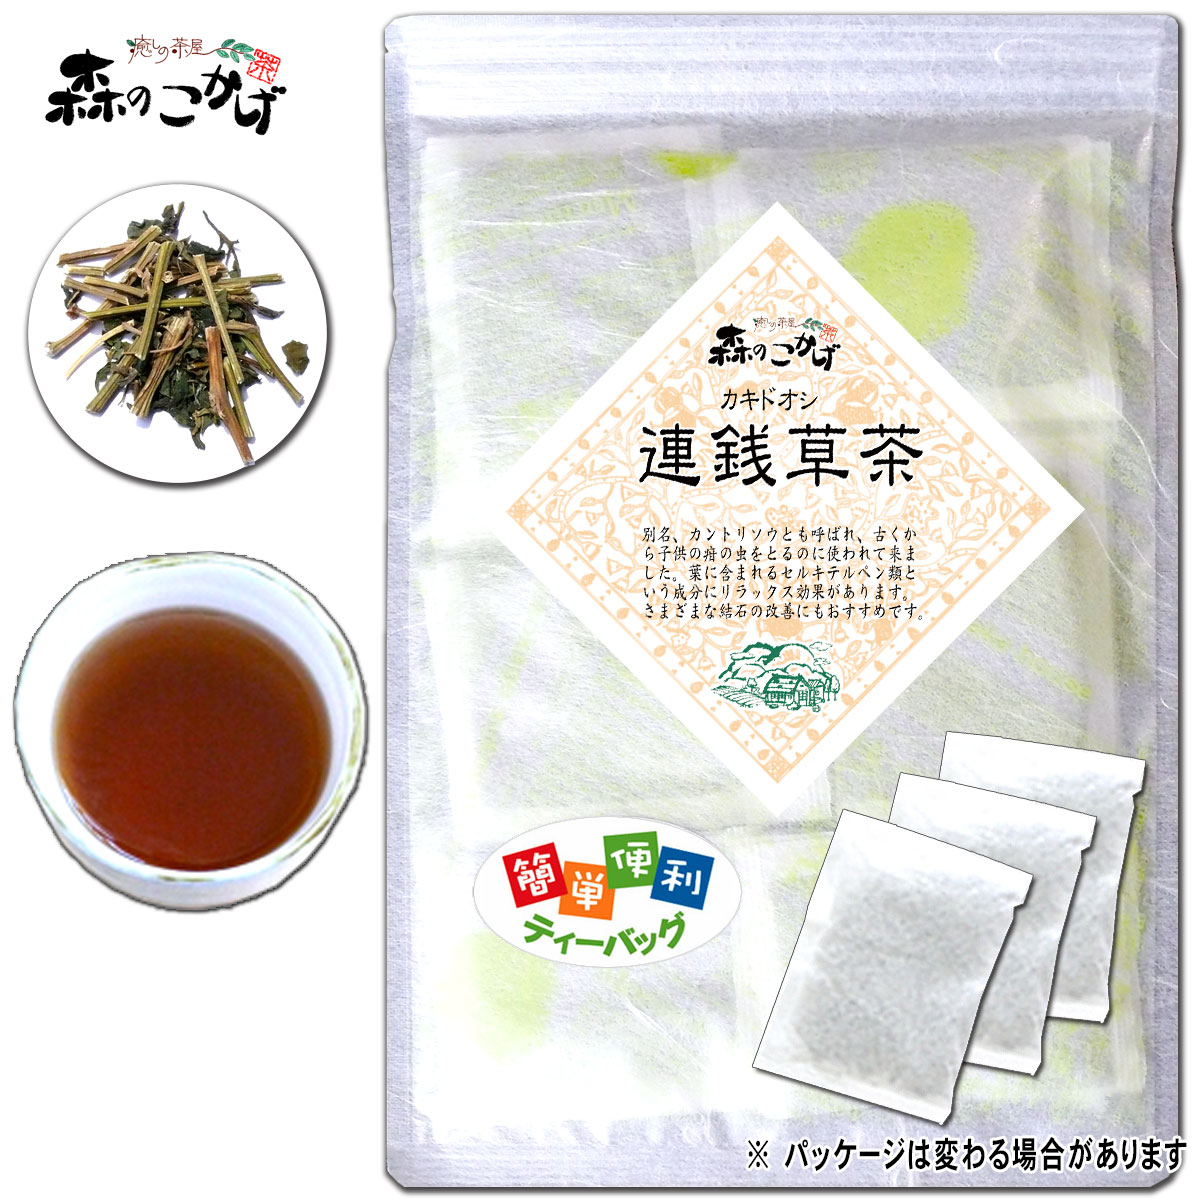 森のこかげ 森のこかげ アマチャヅル茶 ティーバッグ 40包 × 1袋 健康茶の商品画像